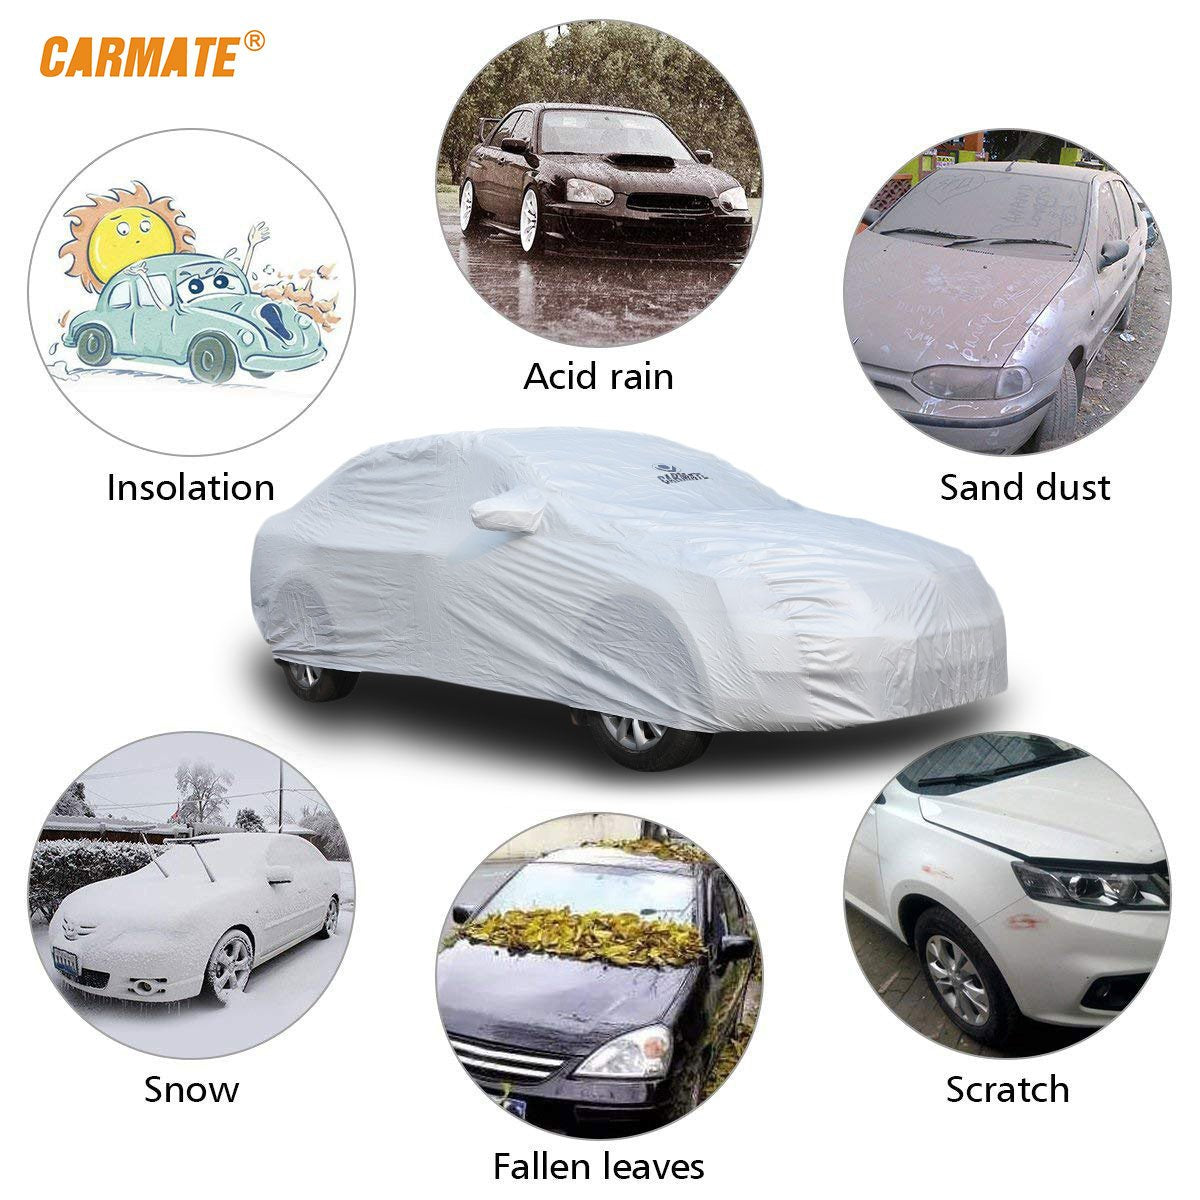 Carmate Premium Car Body Cover Silver Matty (Silver) for  Hyundai - Santro 2018 - CARMATE®